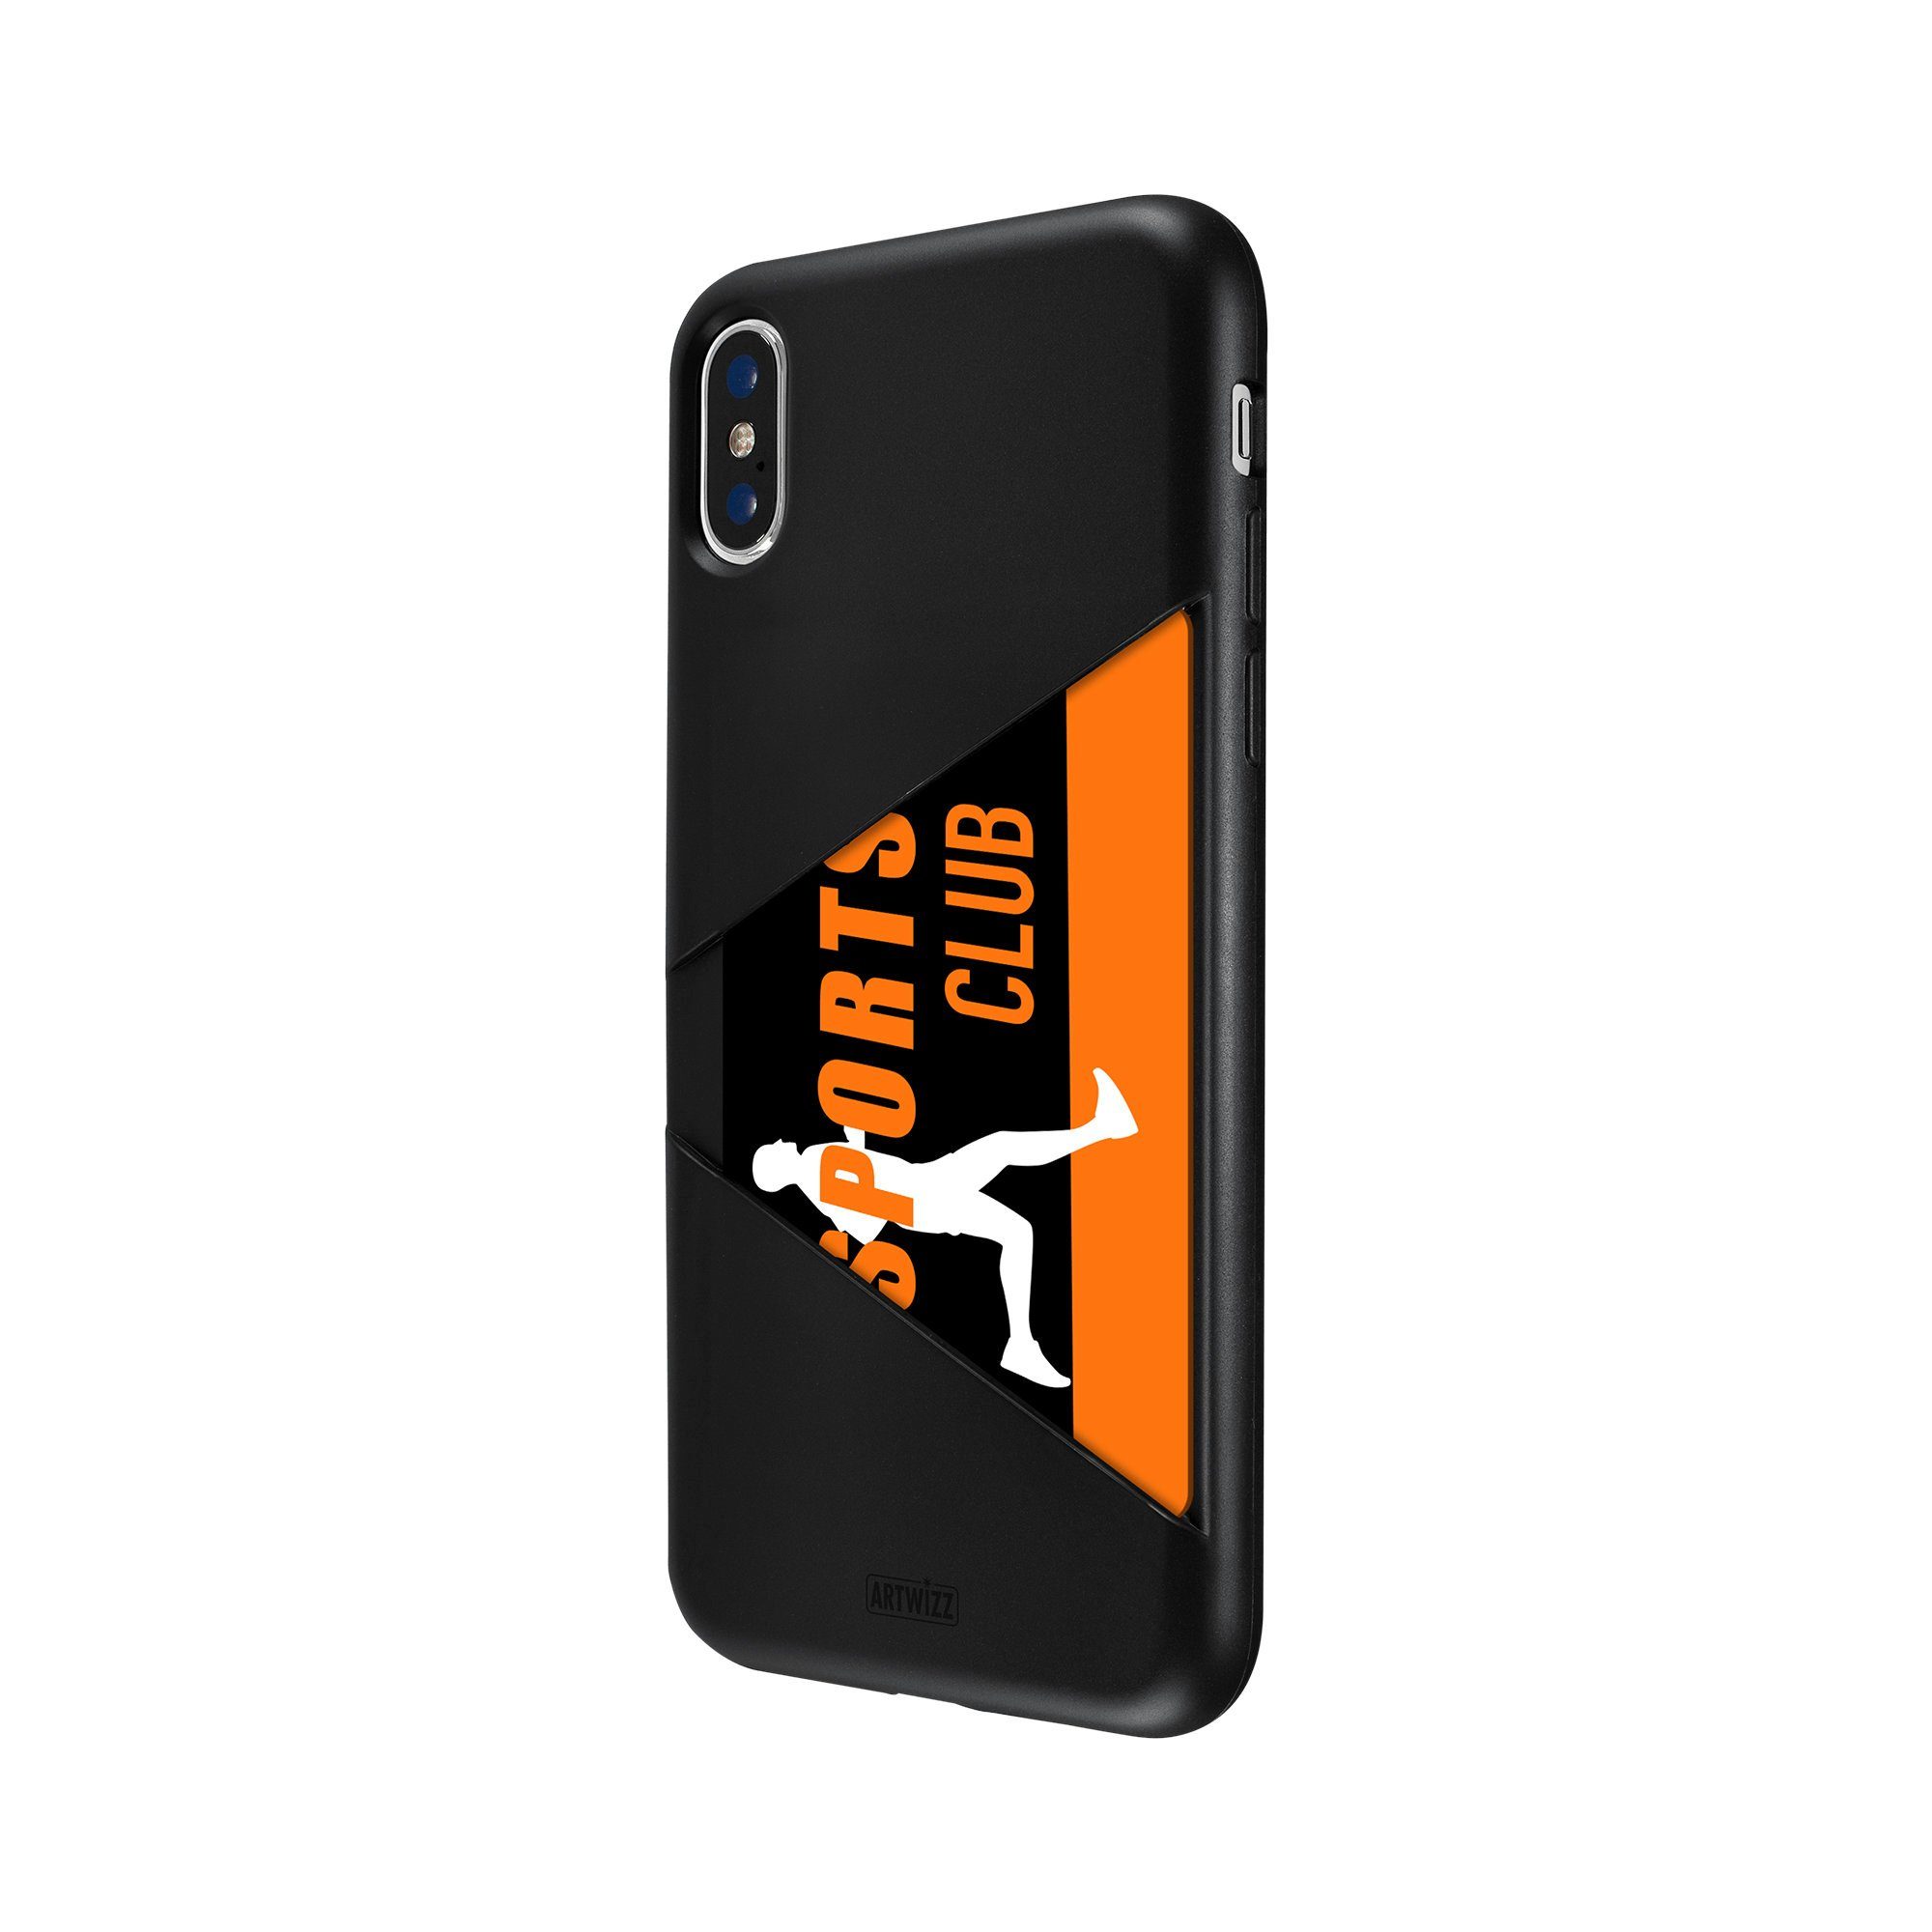 Artwizz Smartphone-Hülle Artwizz TPU Card Case - Artwizz TPU Card Case - Ultra dünne, elastische Schutzhülle mit Kartenfach auf der Rückseite für iPhone X (kompatibel mit iPhone Xs), Schwarz